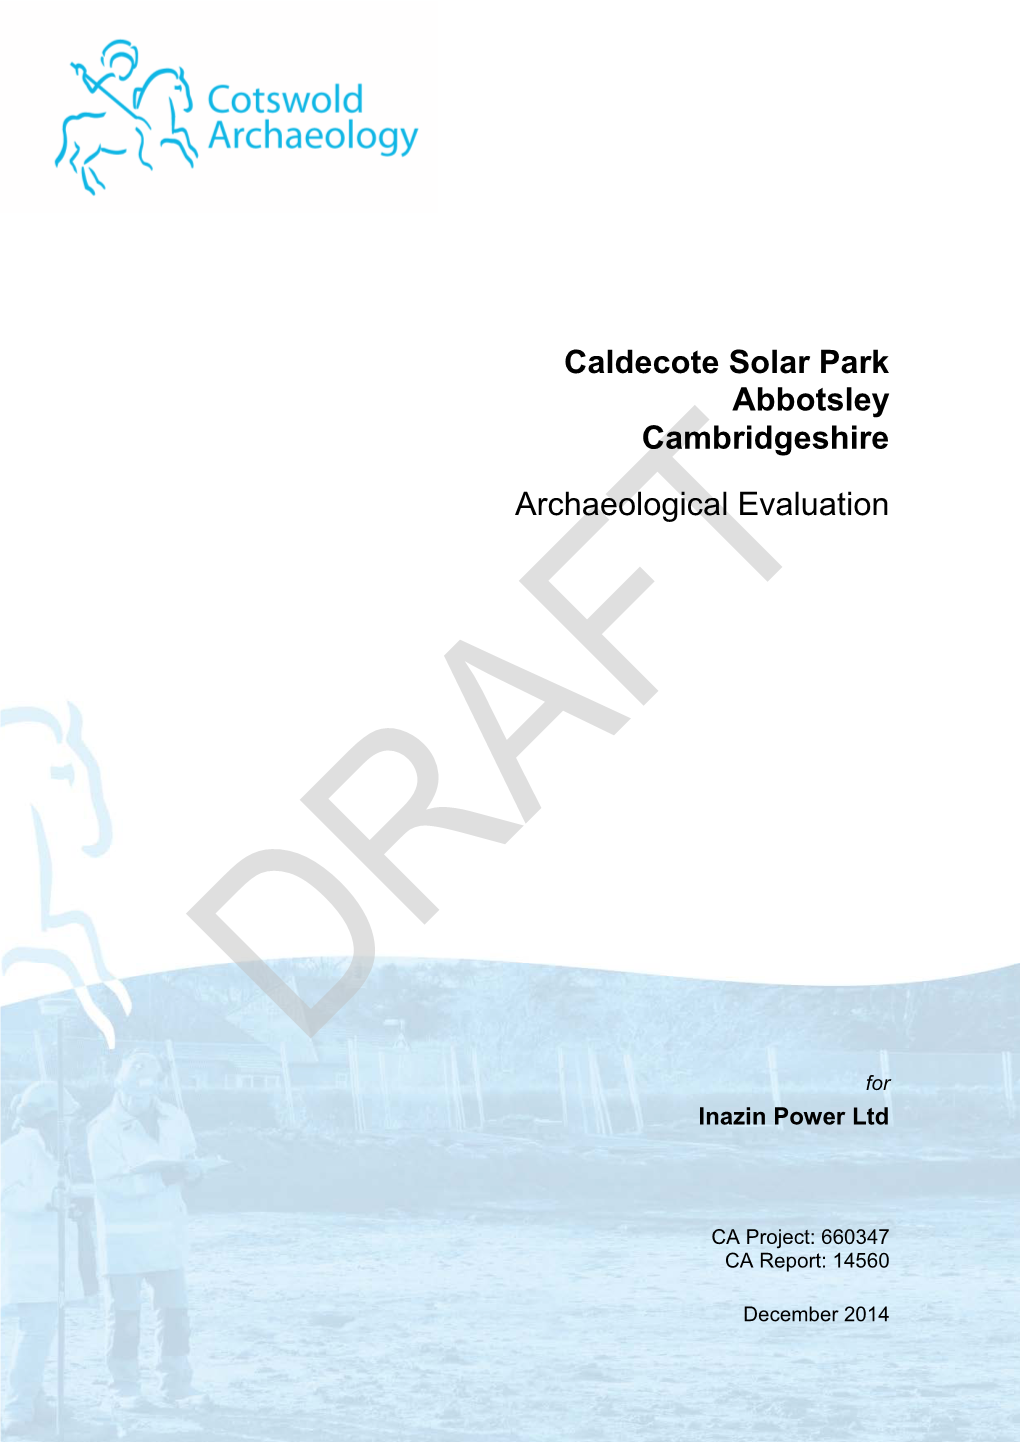 Caldecote Solar Park Abbotsley Cambridgeshire Archaeological Evaluation